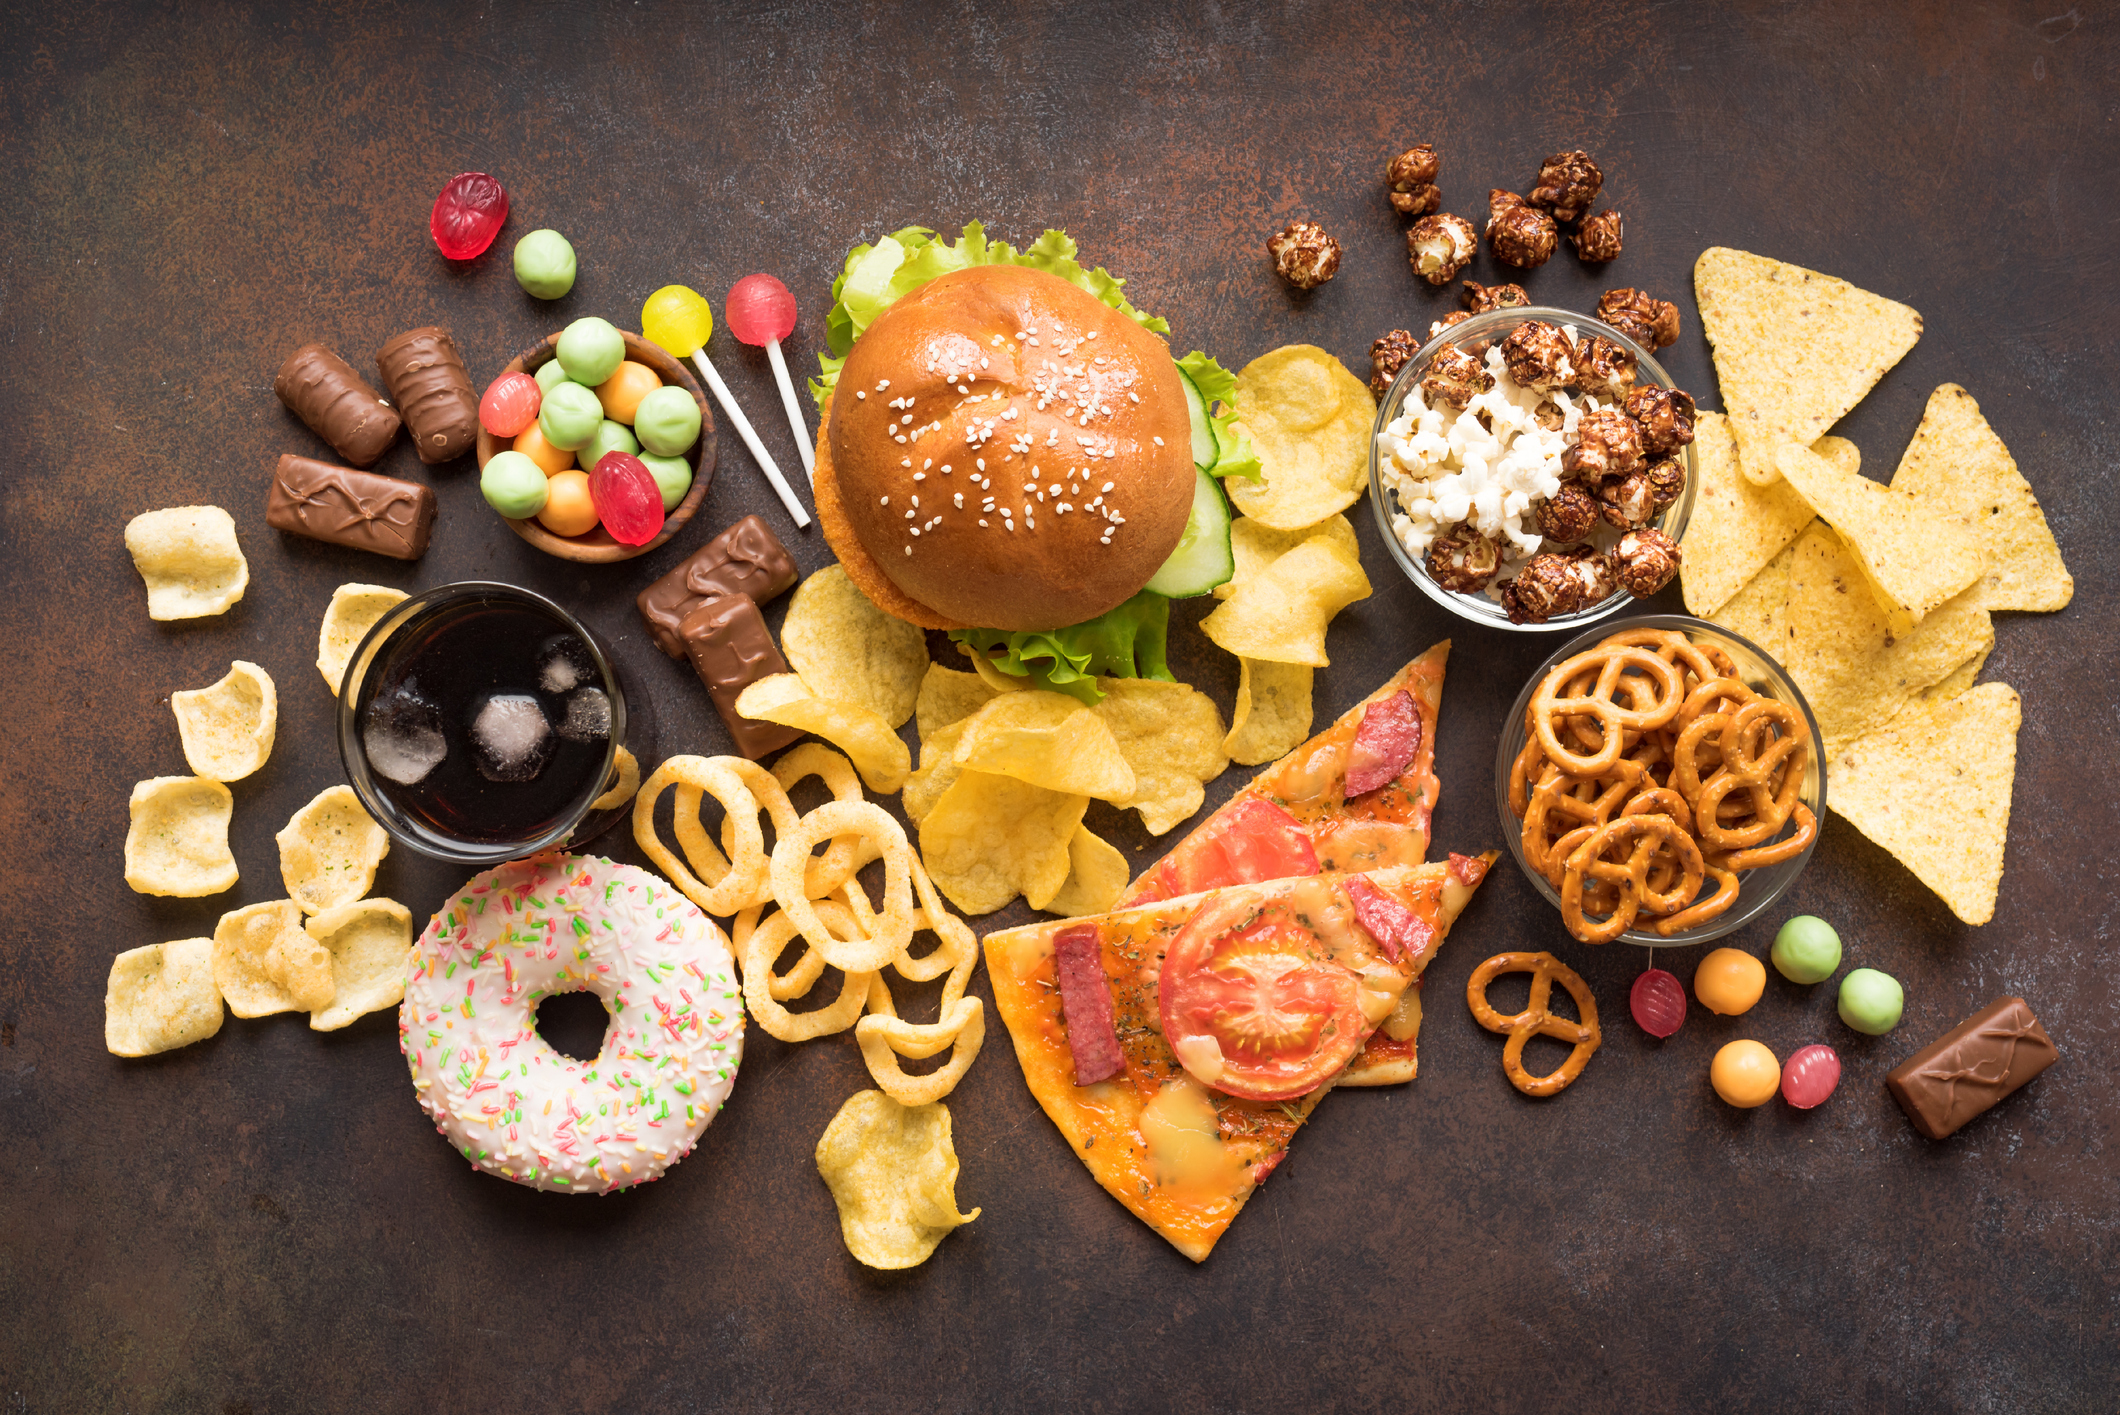 La adicción a la comida ultraprocesada: ¿Cuáles son sus efectos secundarios?